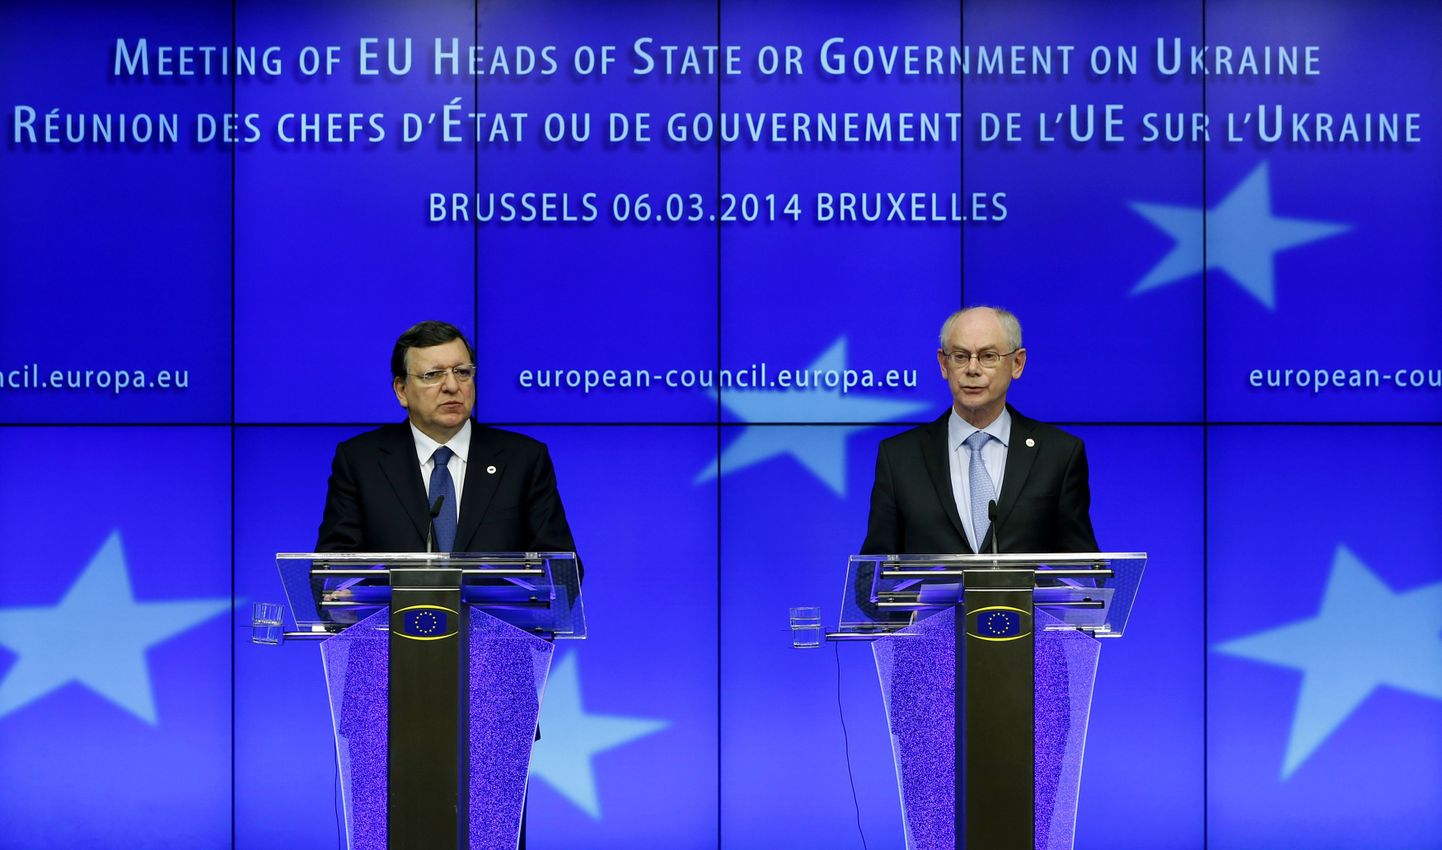 Президенты Еврокомиссии и Евросоюза на совместной пресс-конференции после экстренного заседания Совета Европы в Брюсселе по ситуации на Украине.